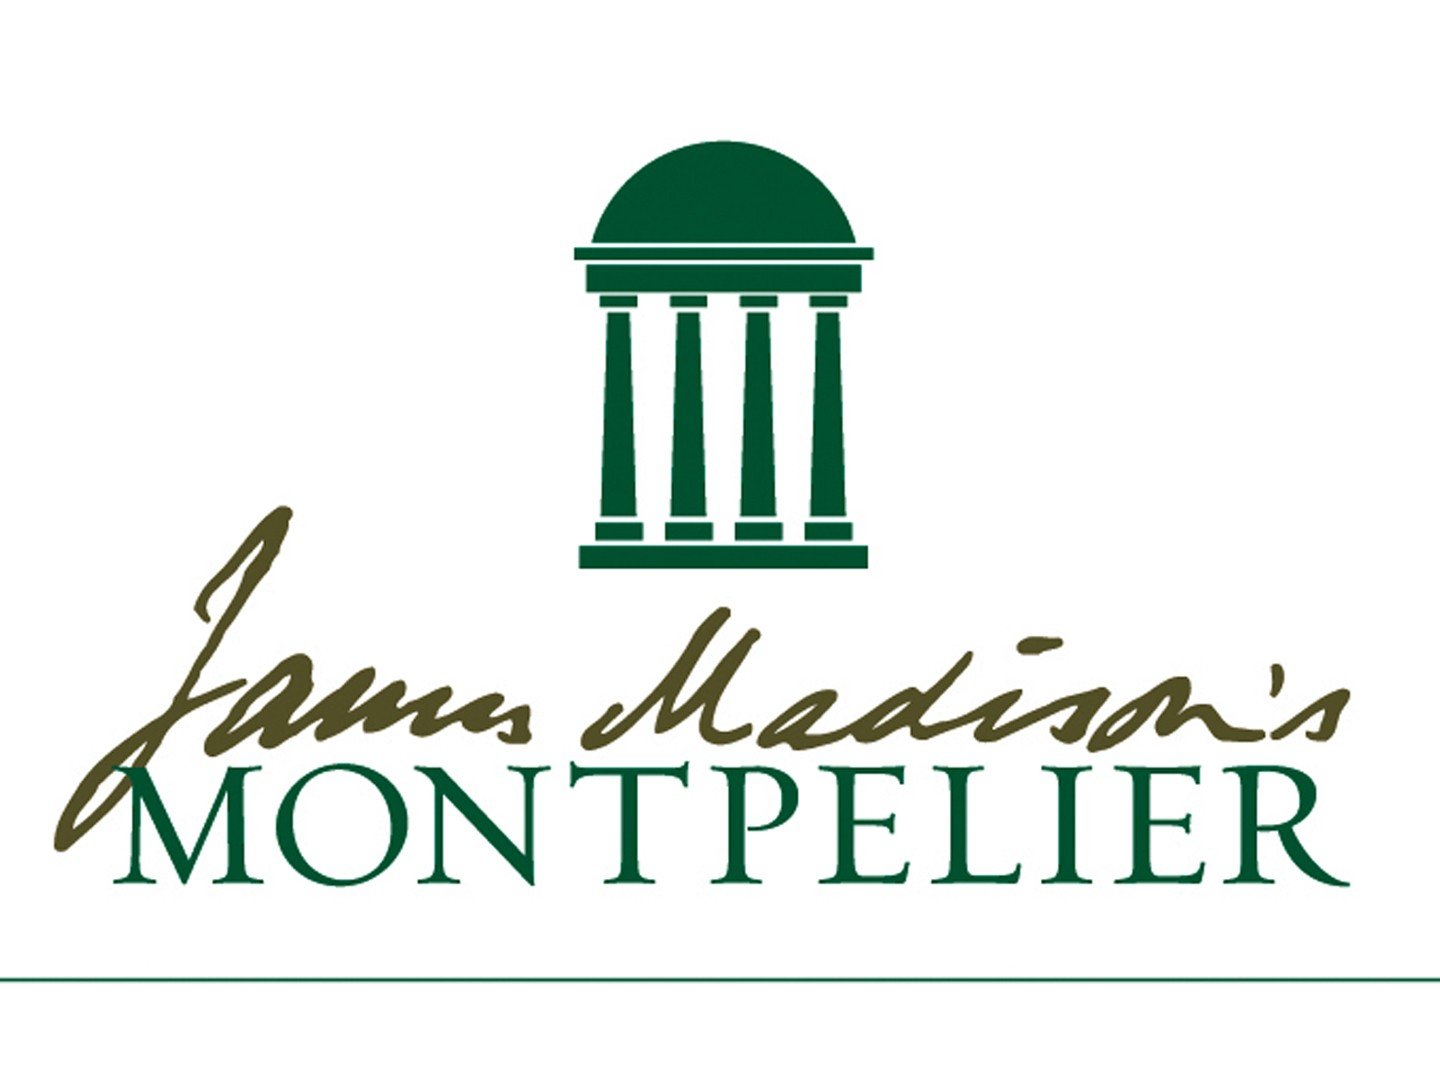 Montpelier Foundation.jpg